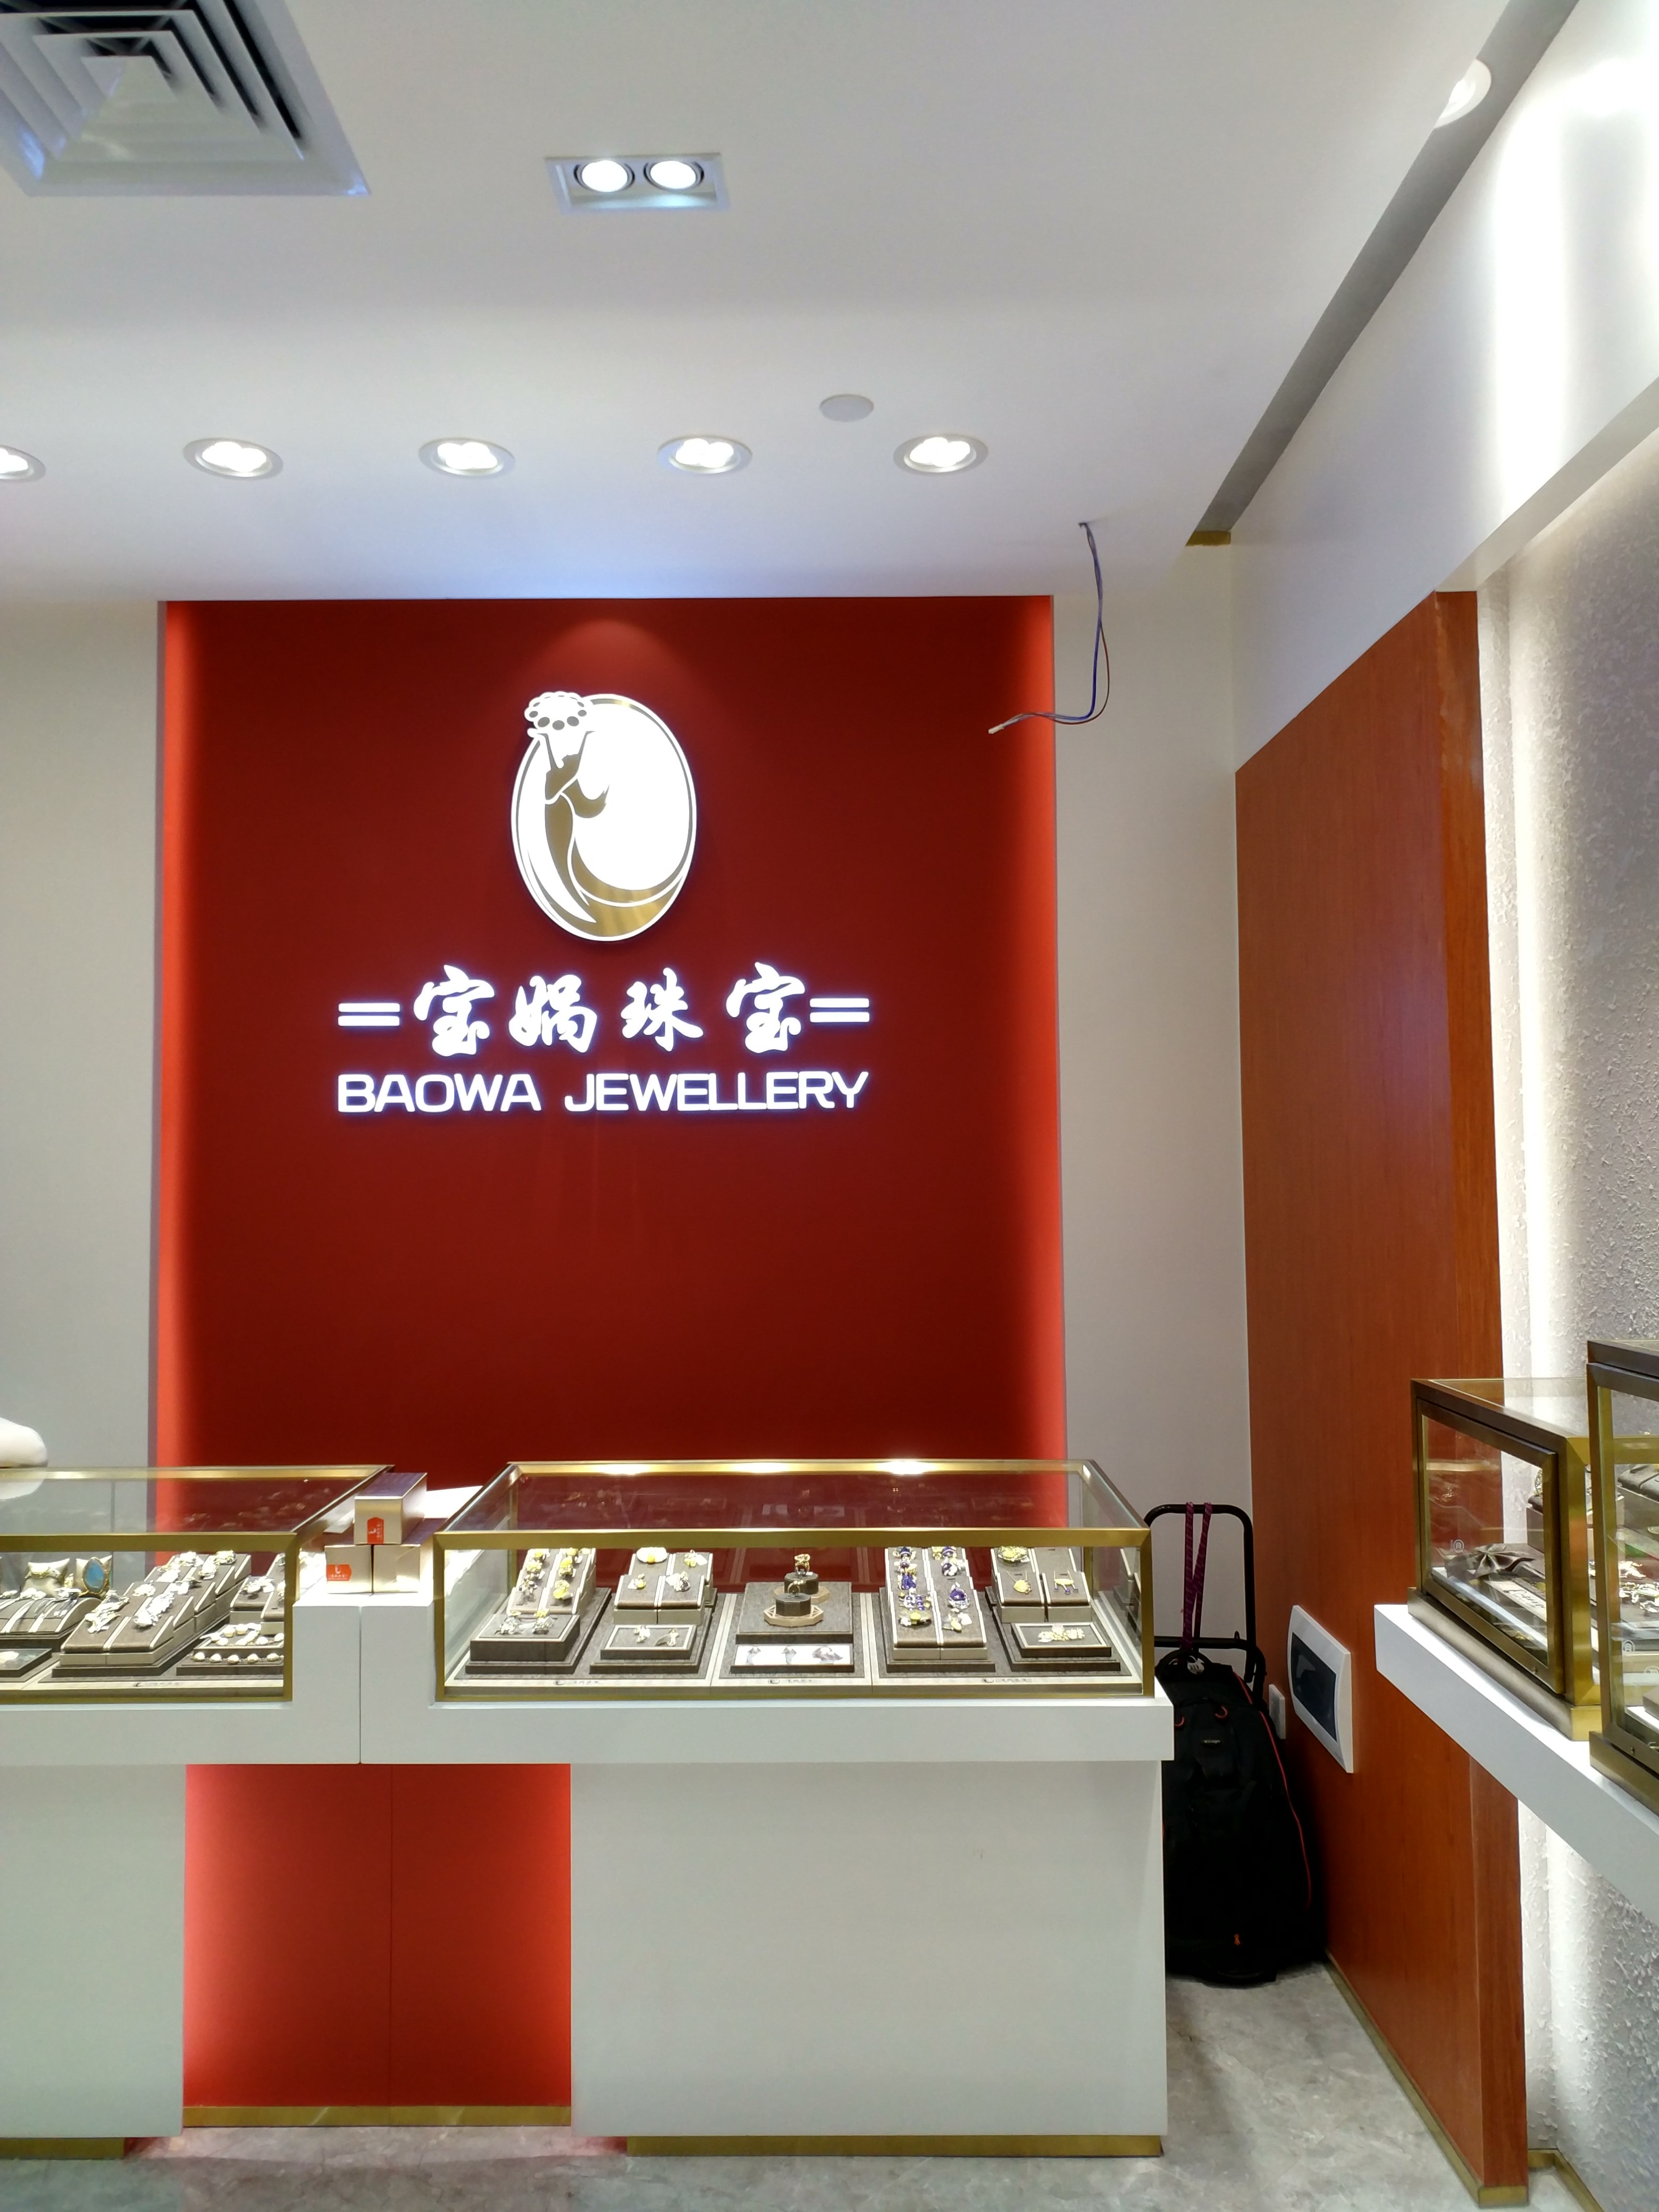 深圳珠宝时尚周,有一家特色珠宝店开业了